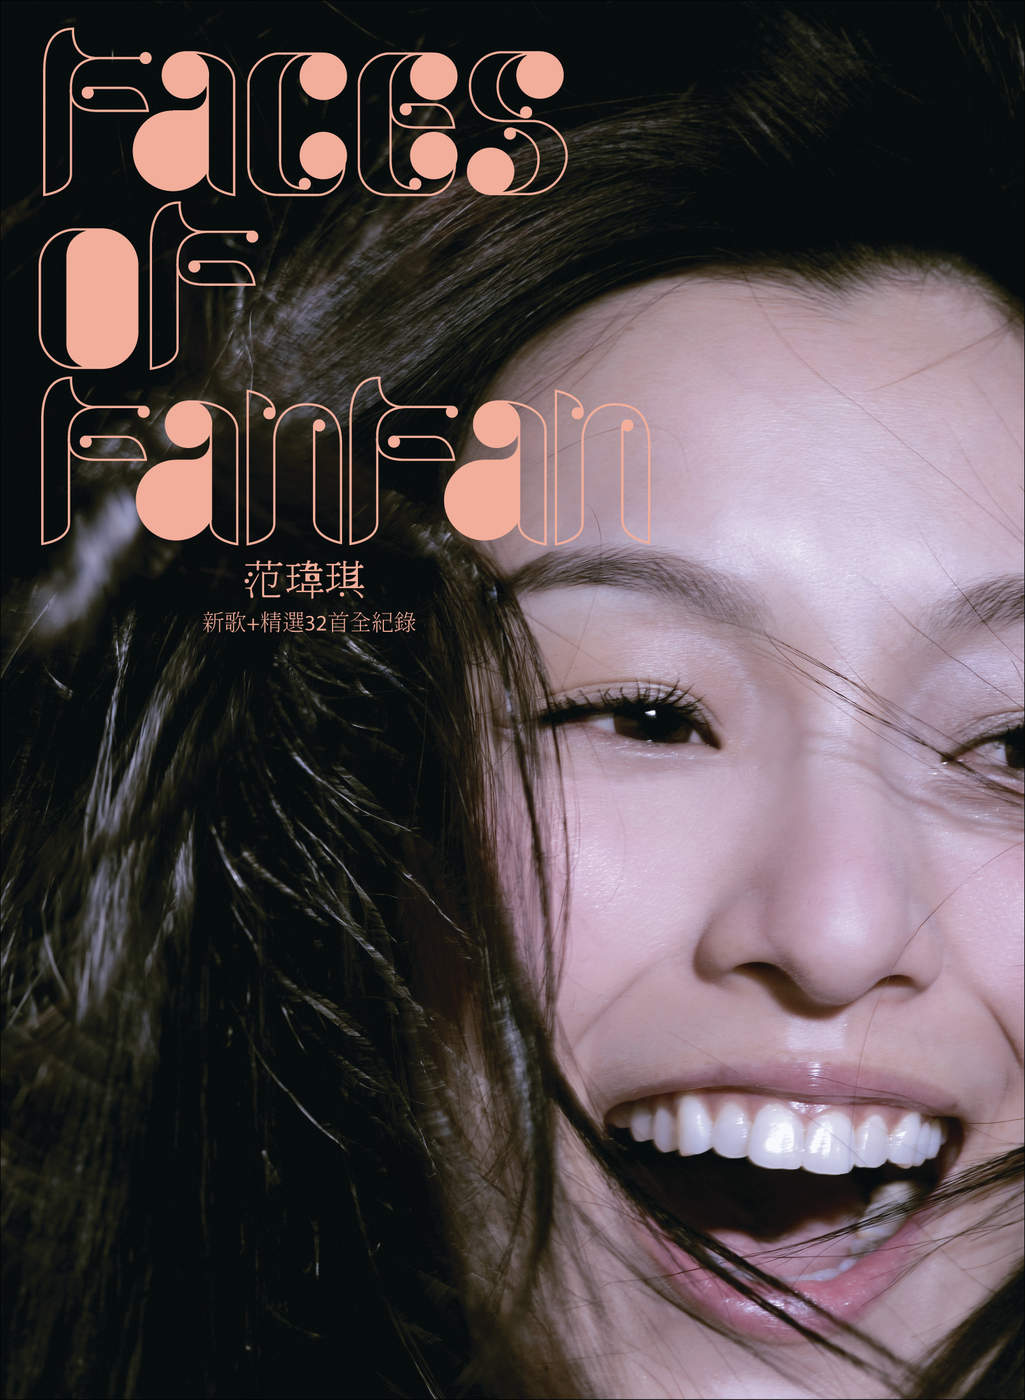 范玮琪 – Faces of Fanfan 新歌+精选